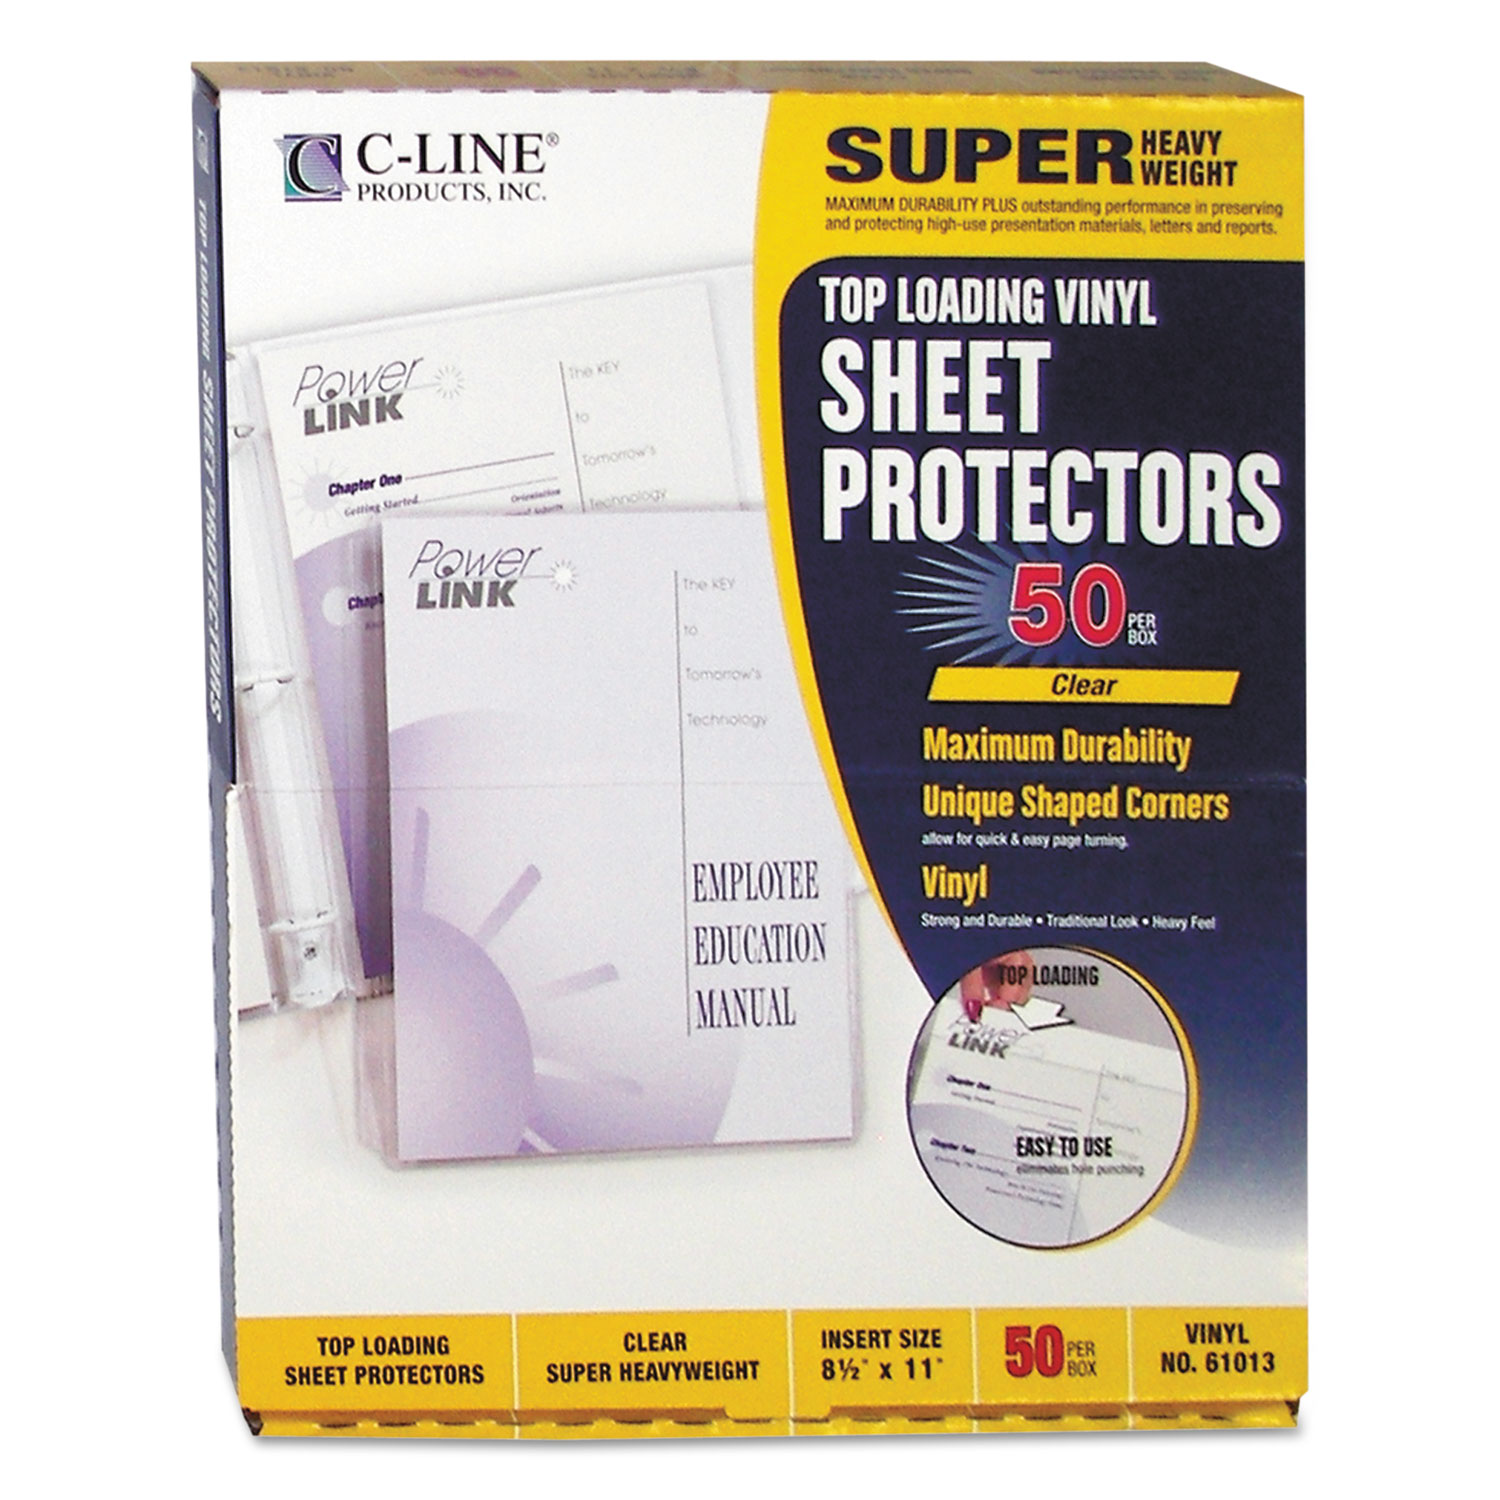 Super Heavyweight Vinyl Sheet Protectors, Clear, 2 Sheets, 11 x 8 1/2, 50/BX